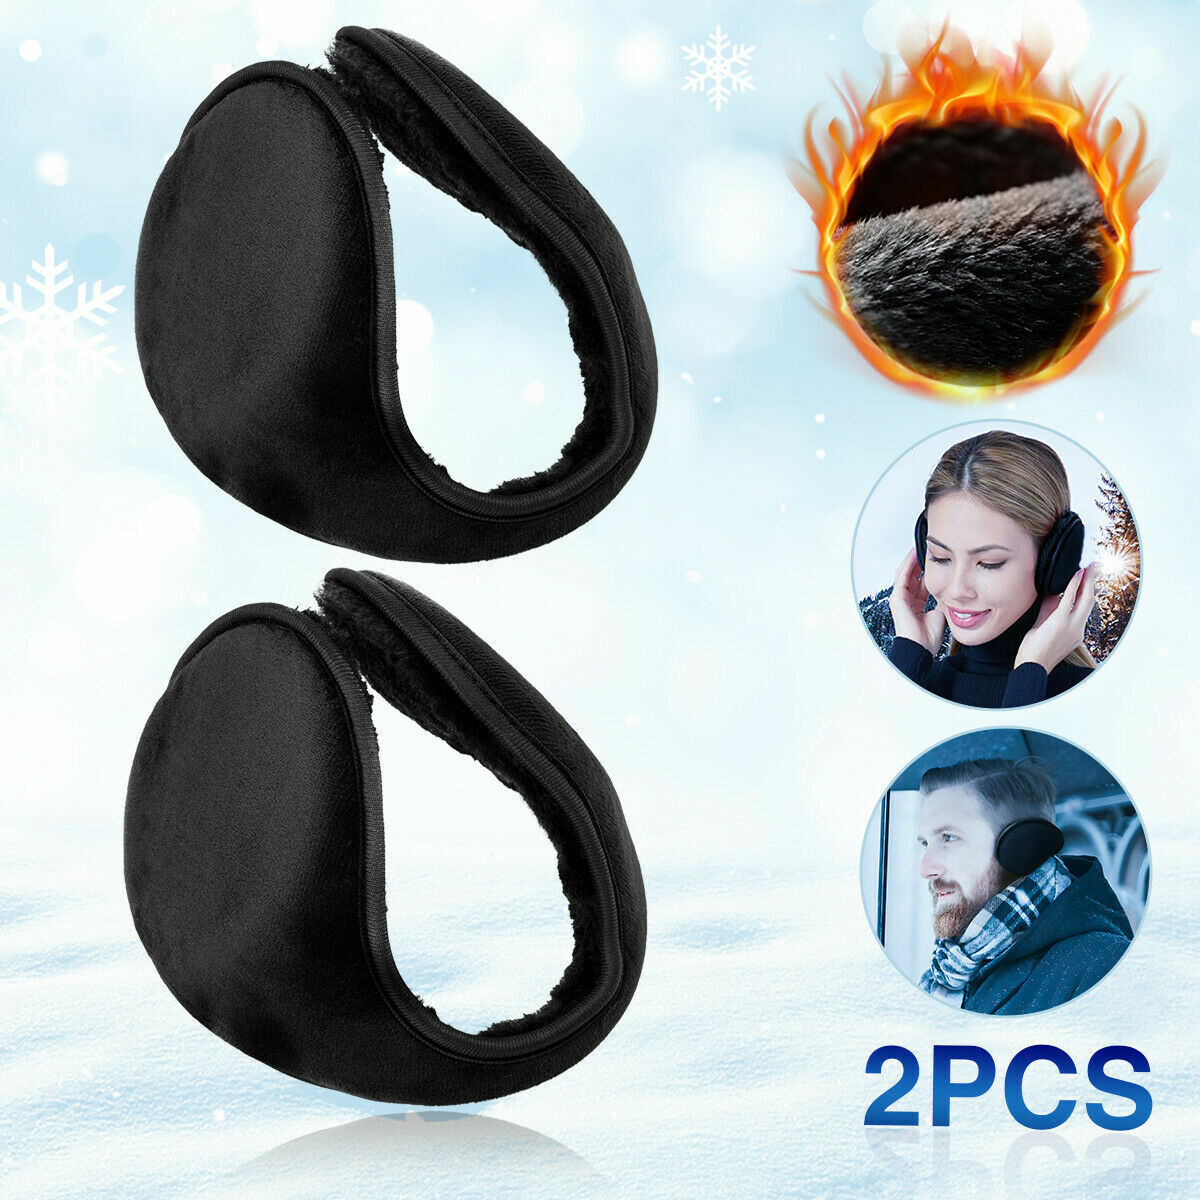 2 x Men Women Ear Muffs Winter Ear warmers Fleece Earwarmer Behind the Head Band Unbranded Does not apply - фотография #2